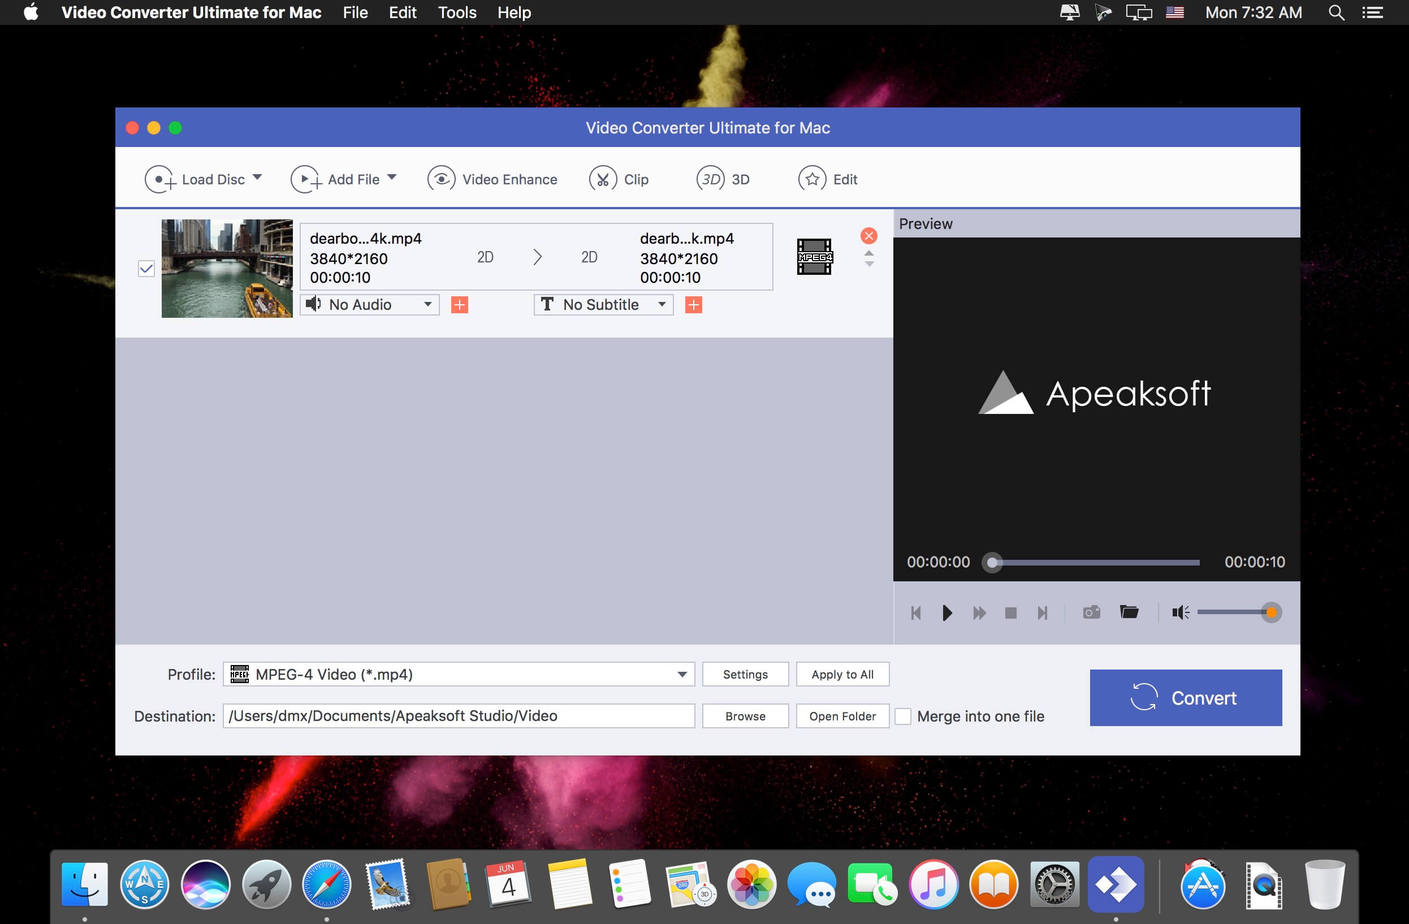 Apeaksoft Video Converter Ultimate Mac